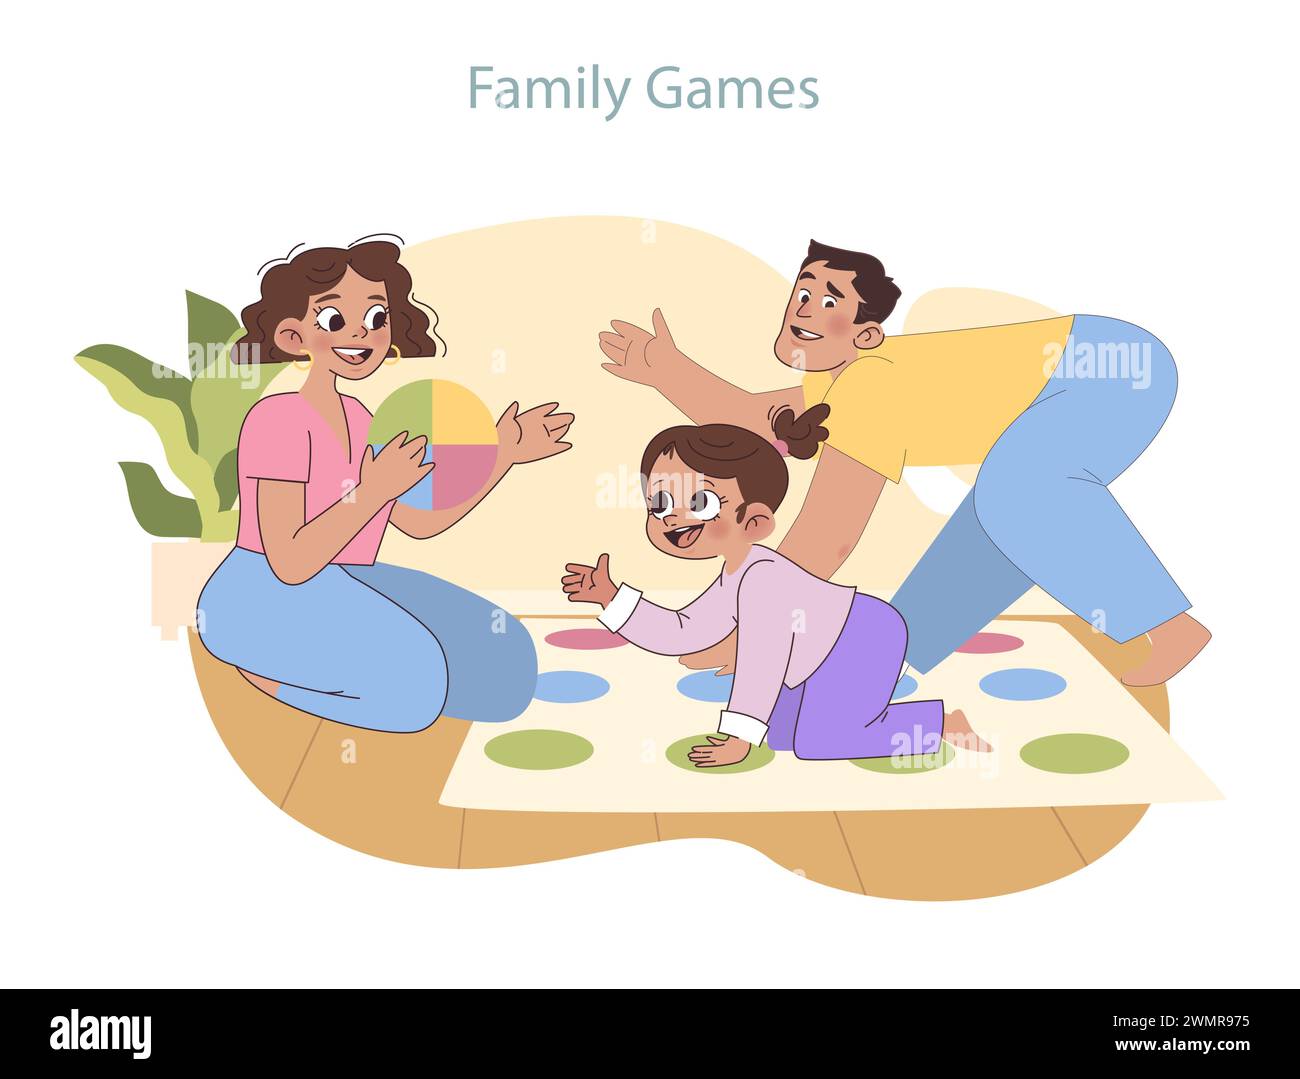 Spielset für die ganze Familie. Eine fröhliche Darstellung von Eltern und Kindern, die ein Bodenspiel spielen und Liebe und Teamarbeit in einer heimeligen Atmosphäre fördern. Stock Vektor